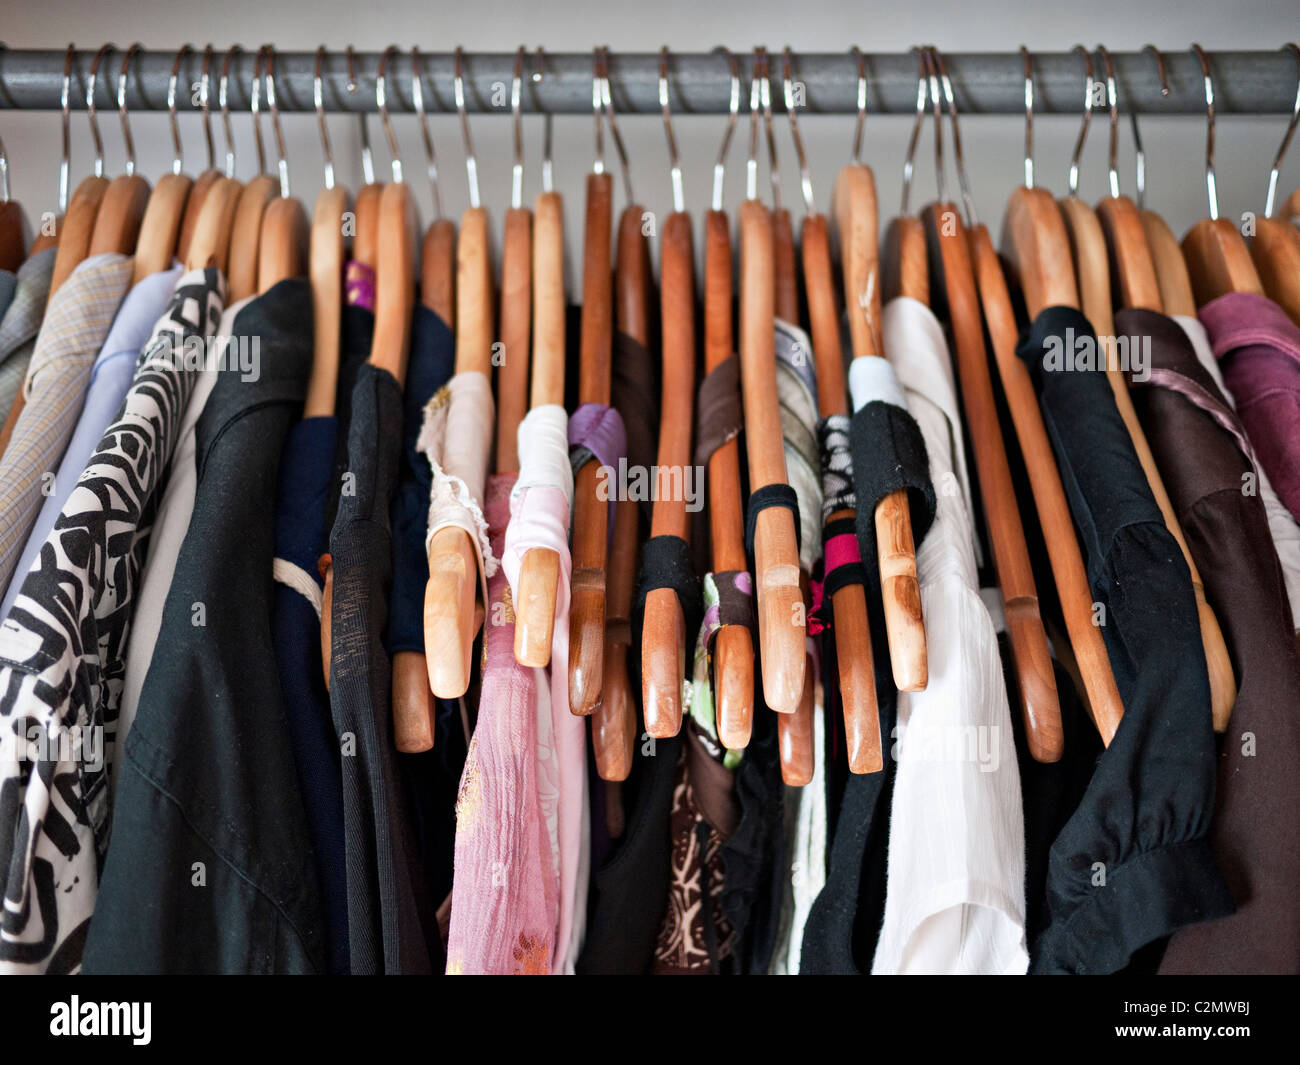 Rampa de ropa en un armario, ropa de hombre y de mujer en perchas de madera Foto de stock